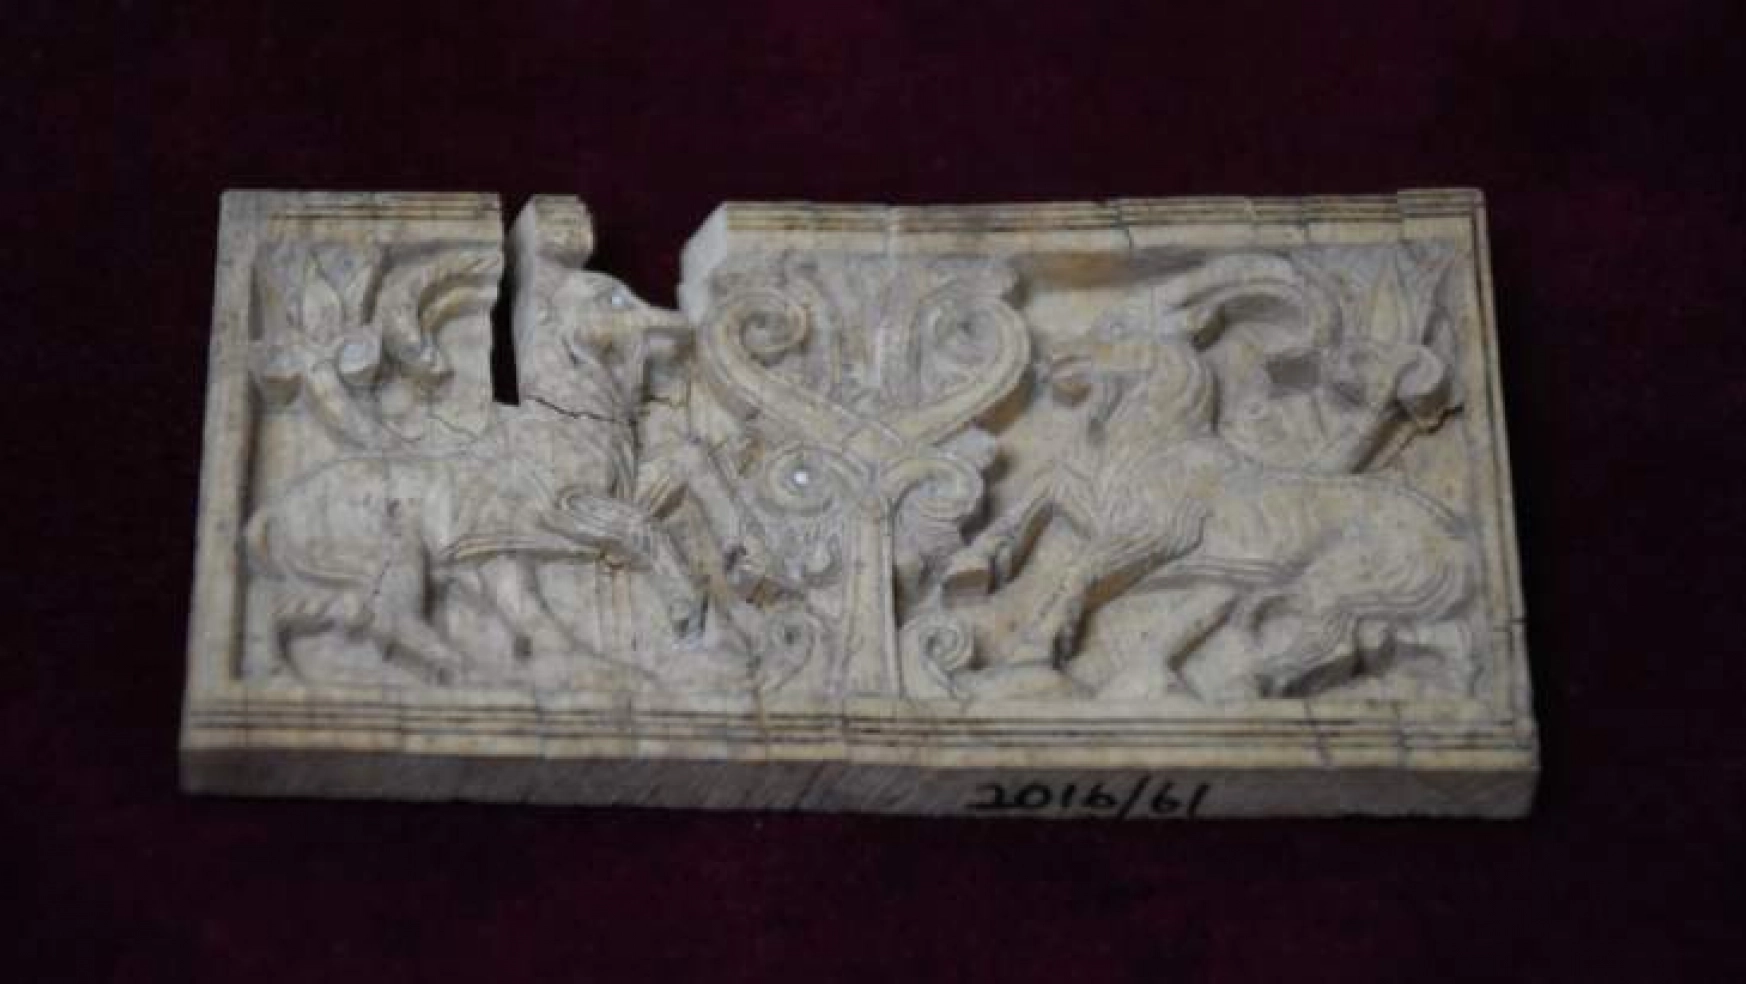 Fil dişi tablet, Arslantepe ve Asur arasındaki ilişkiyi açığa çıkardı